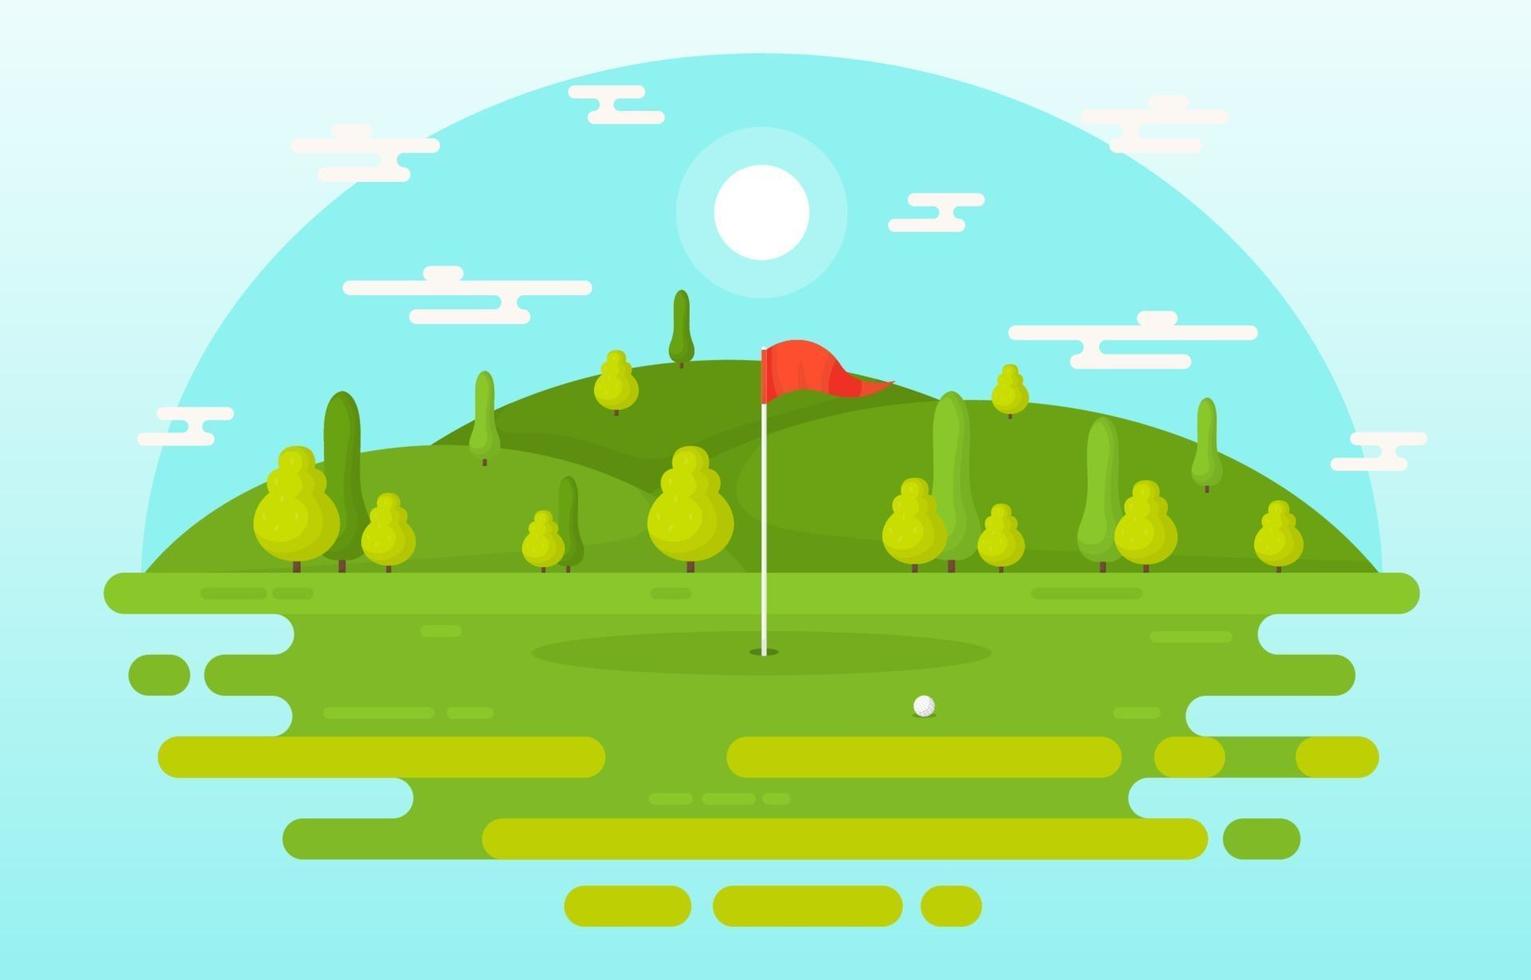 campo de golf con bandera roja, árboles y pelota de golf vector